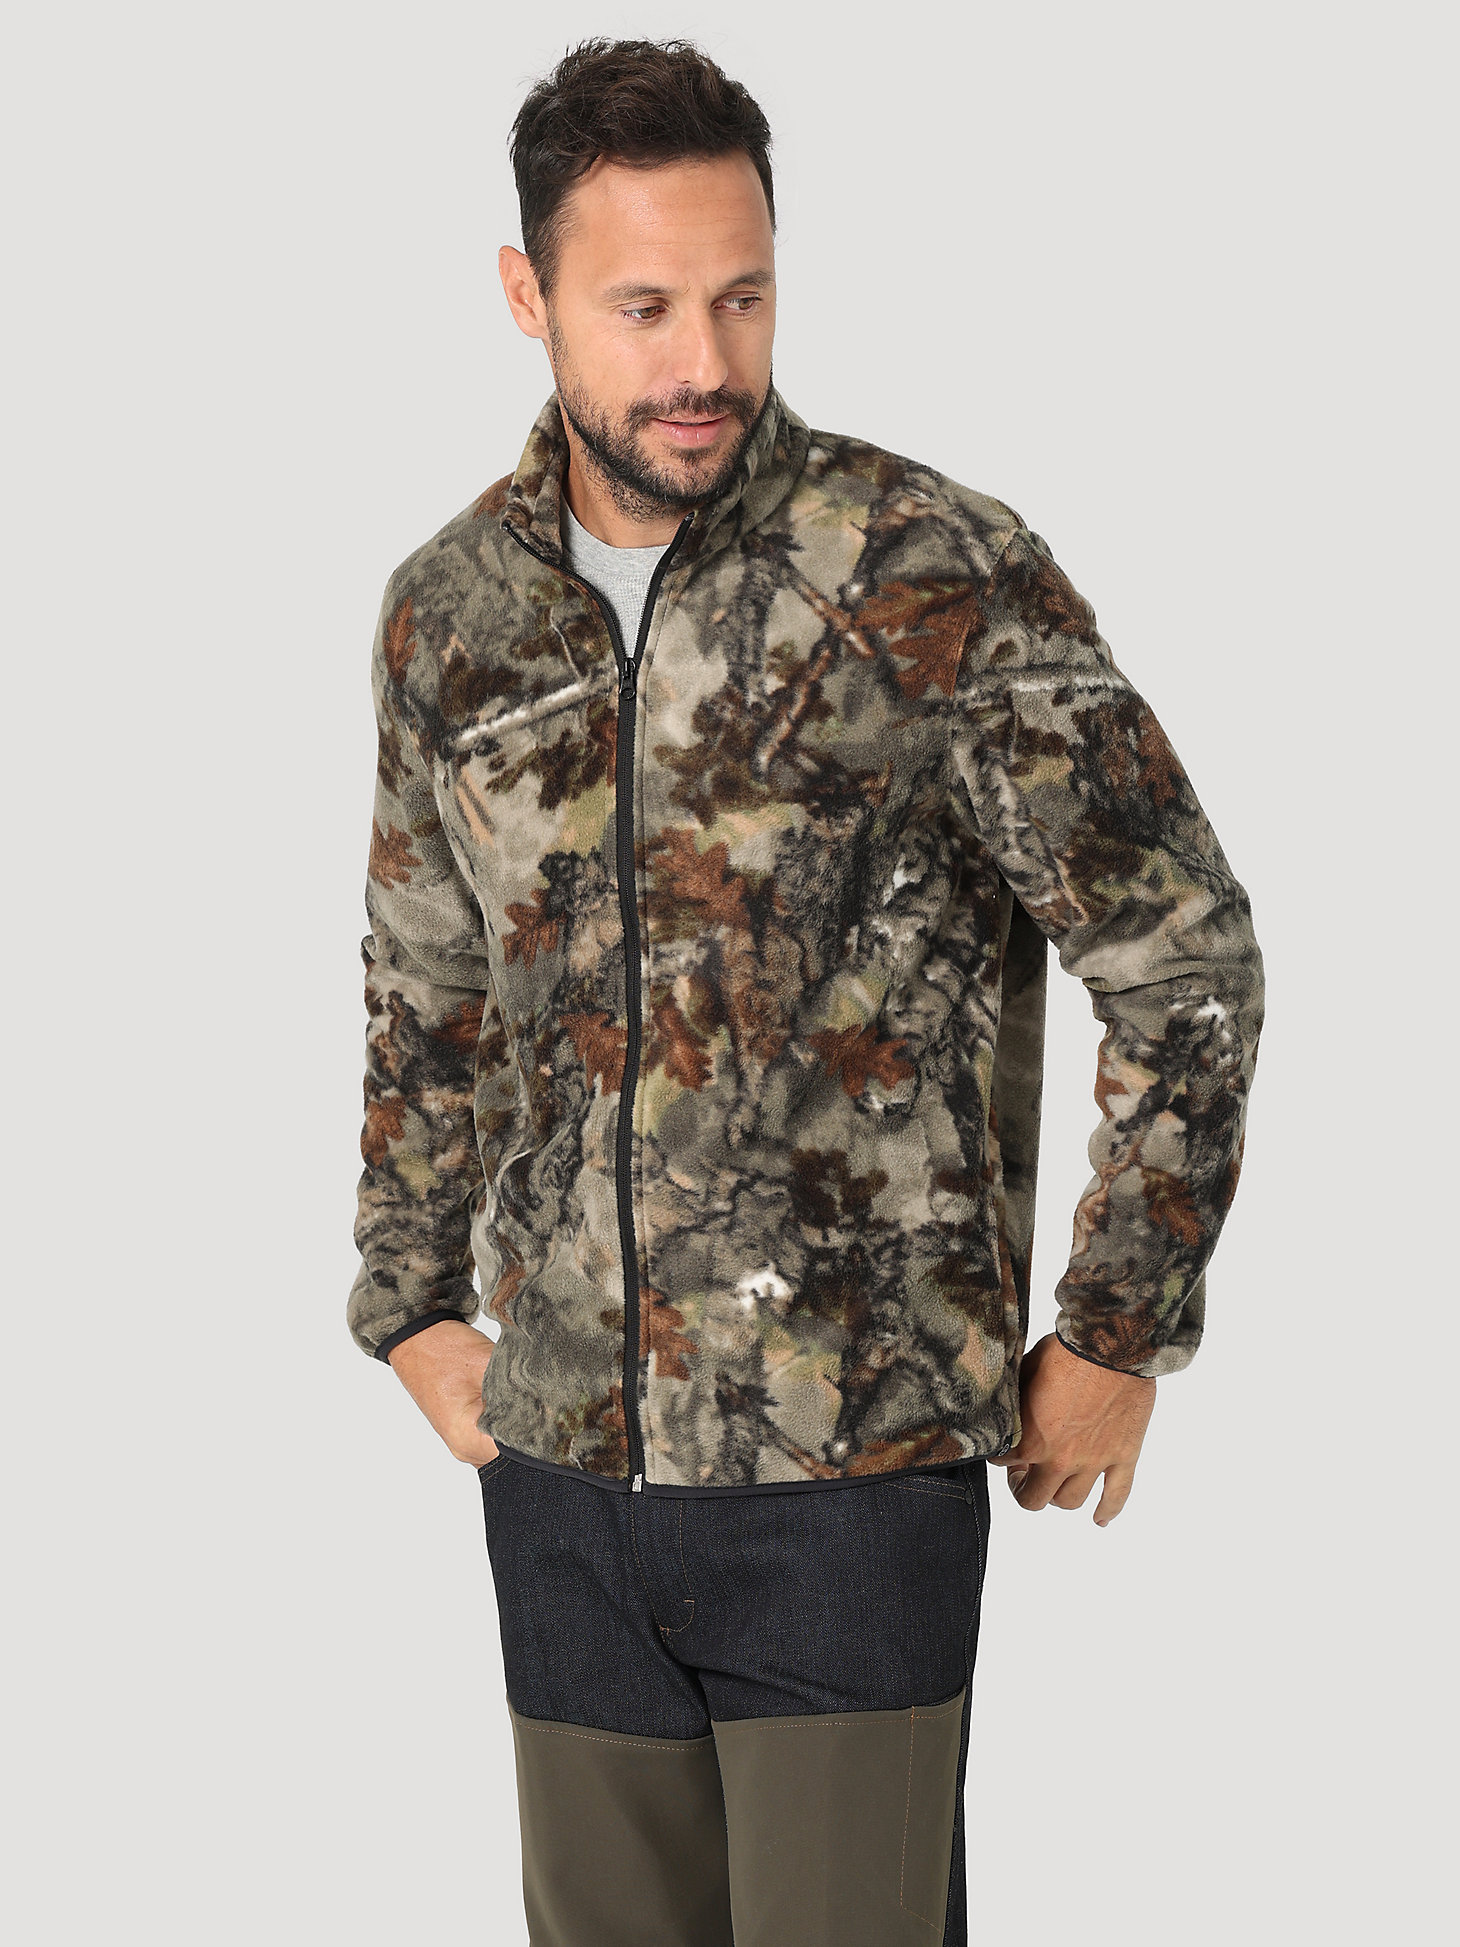 ATG Hunter™ Men's Fleece Jacket in Warmwoods Camo main view